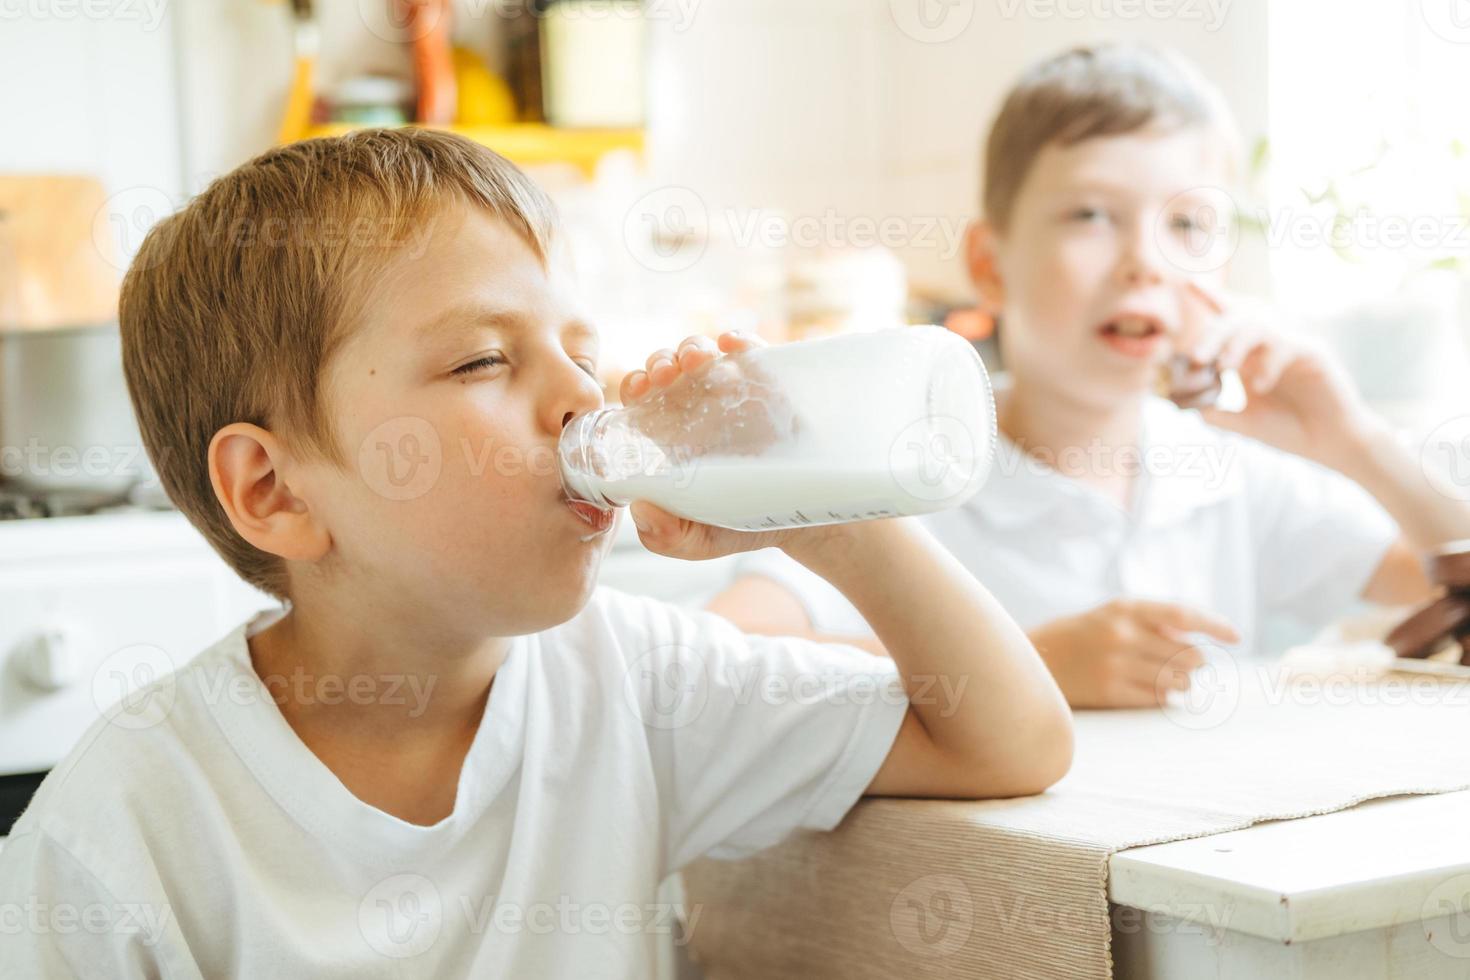 um menino está bebendo leite de uma garrafa na cozinha de casa. café da manhã com leite. criança feliz em uma camiseta branca bebe leite de uma garrafa foto